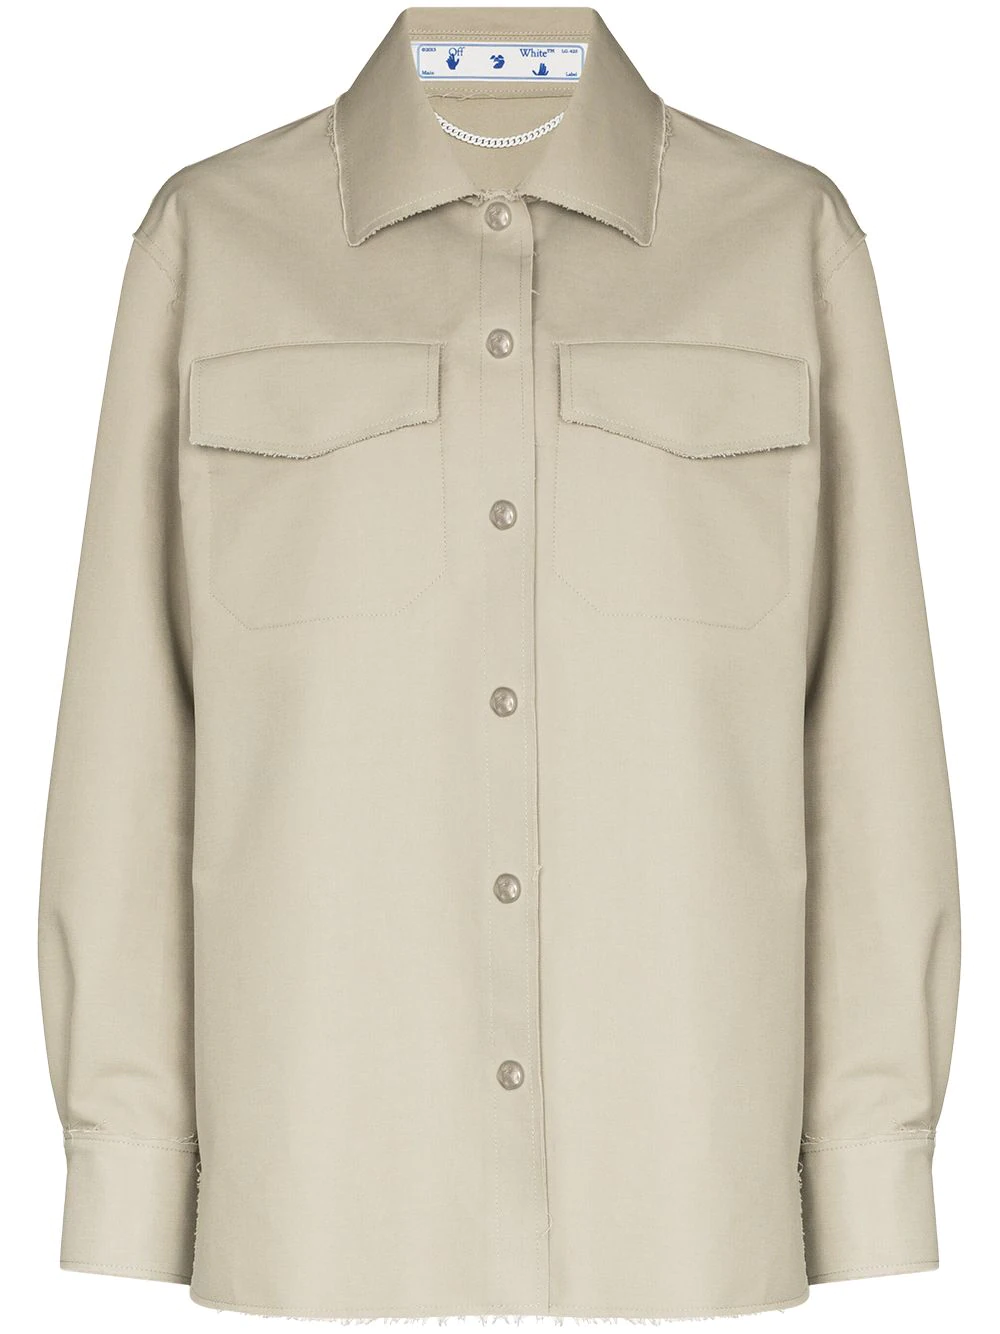 Off-White raw-edge shirt jacket